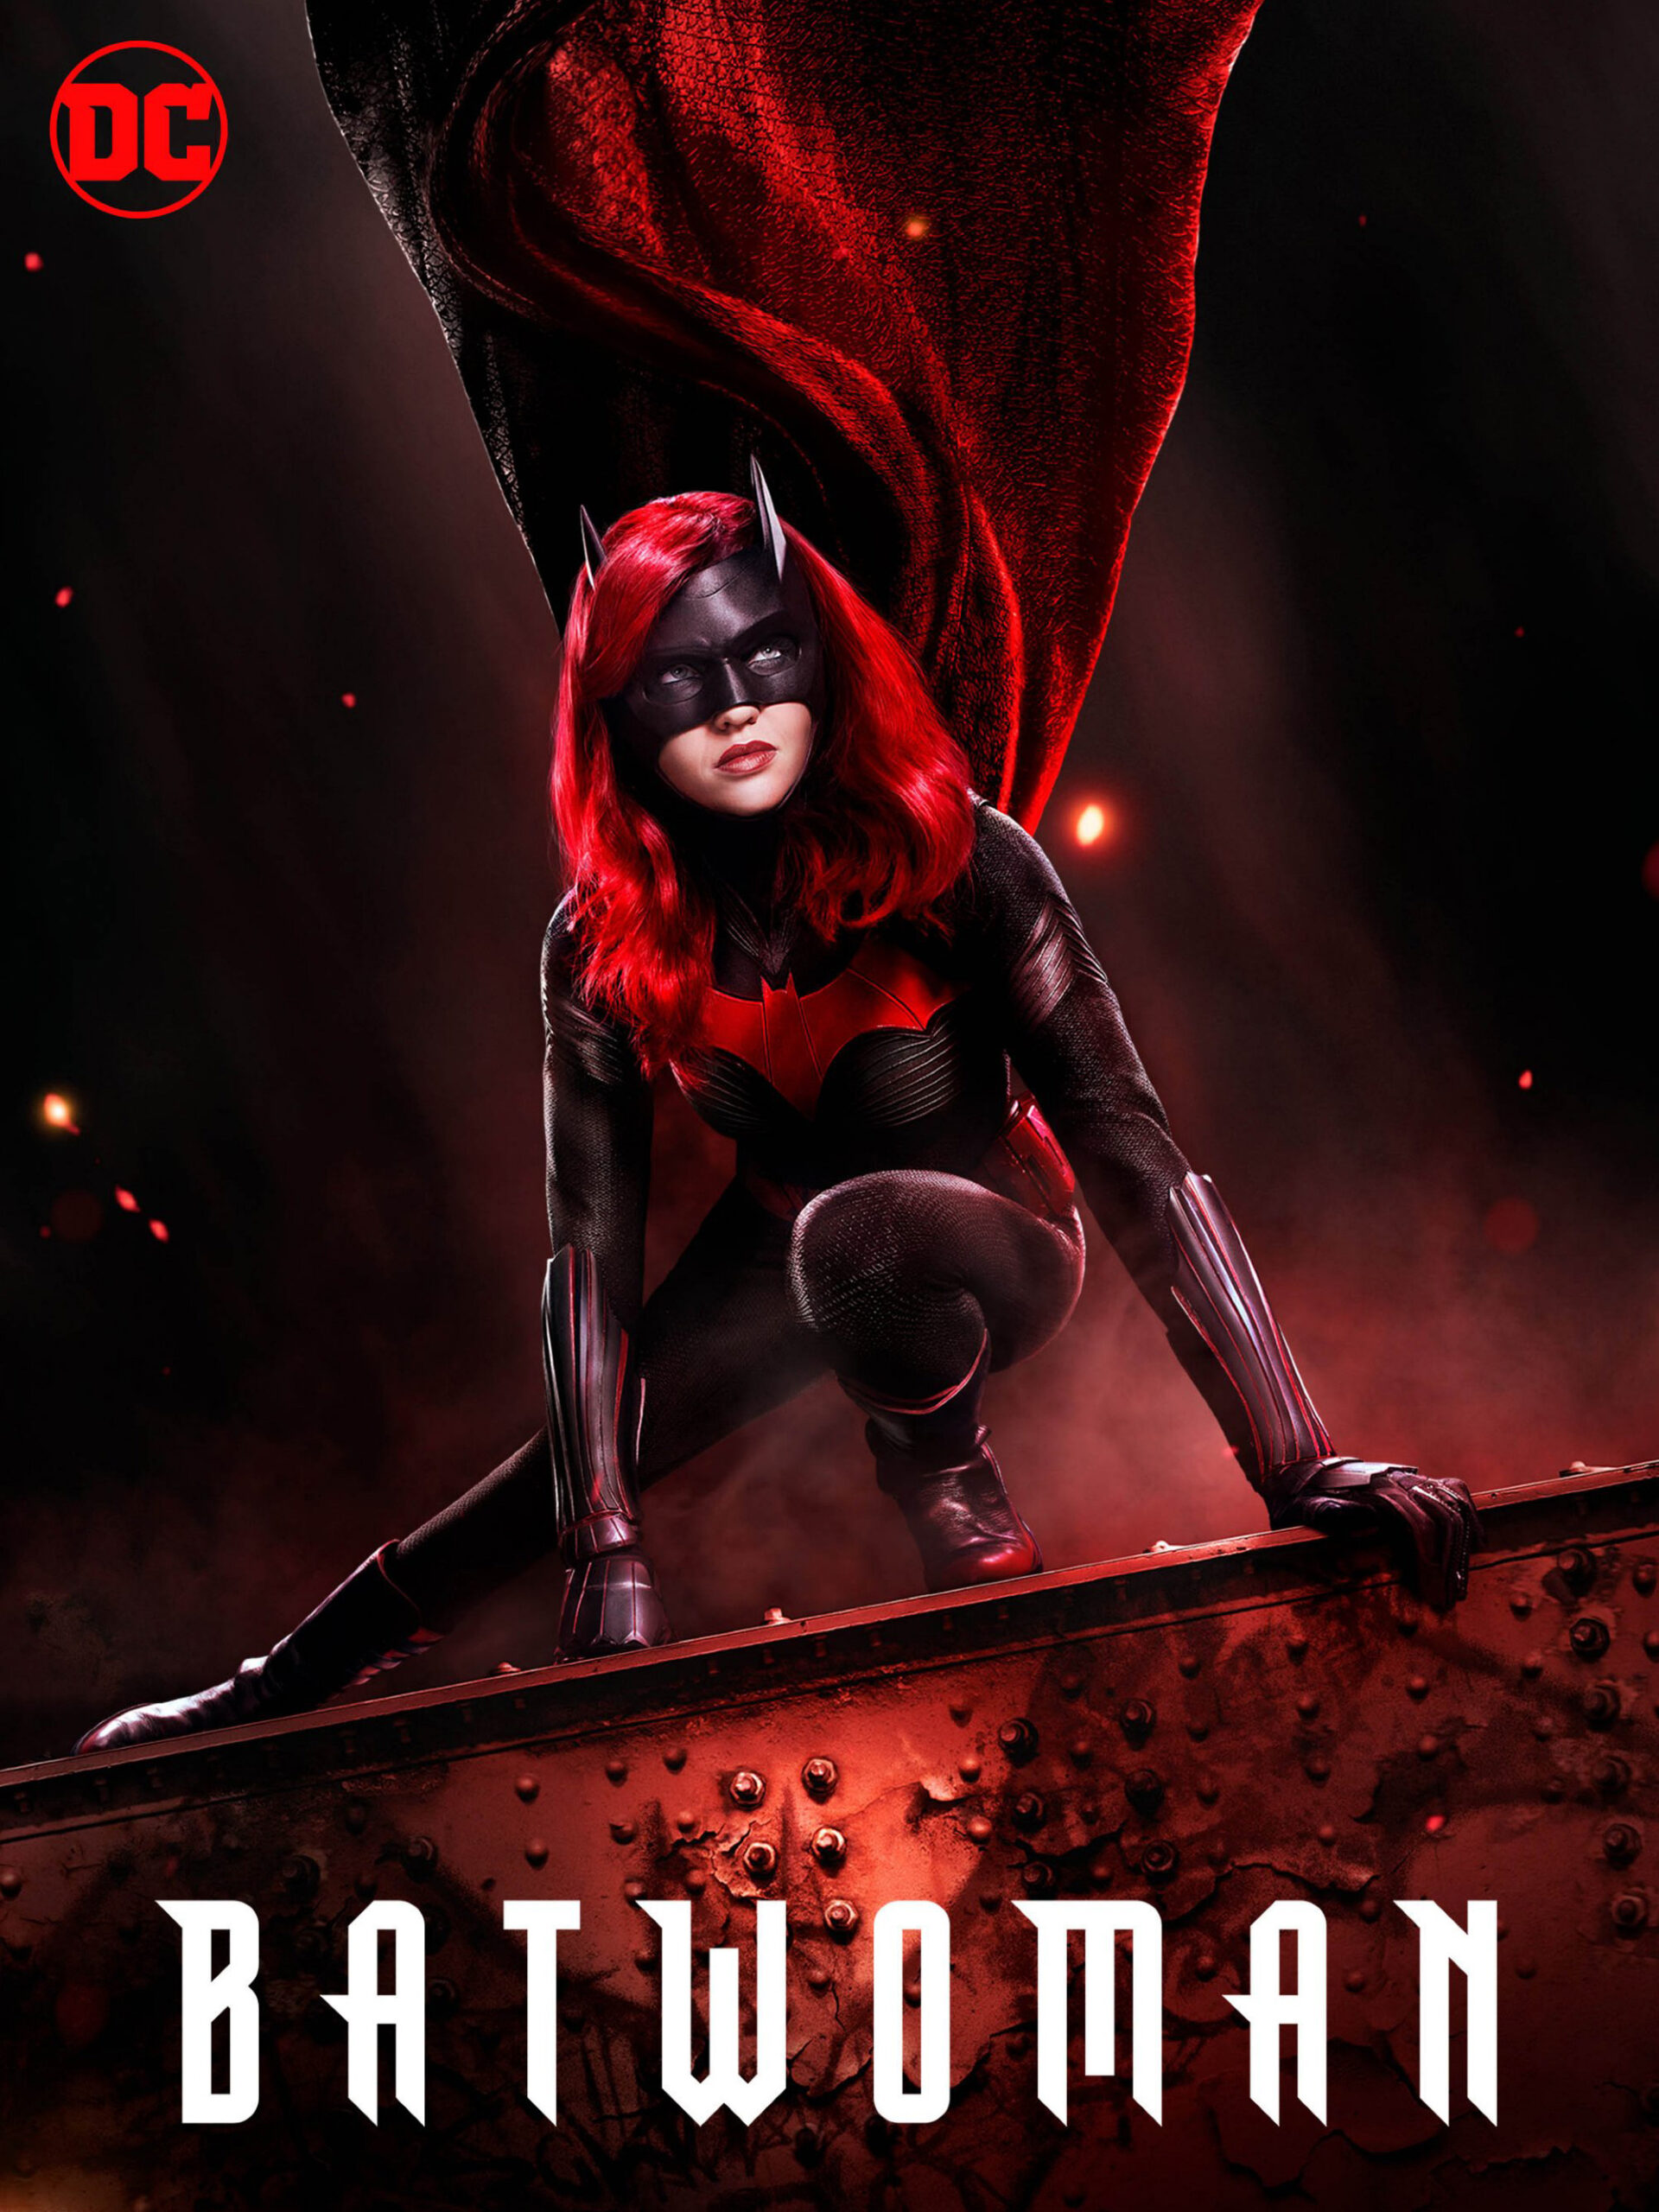 ดูหนังออนไลน์ฟรี Batwoman Season 1 (2019) EP.9 แบทวูแมน ซีซั่น 1 ตอนที่ 9 (Soundtrack)